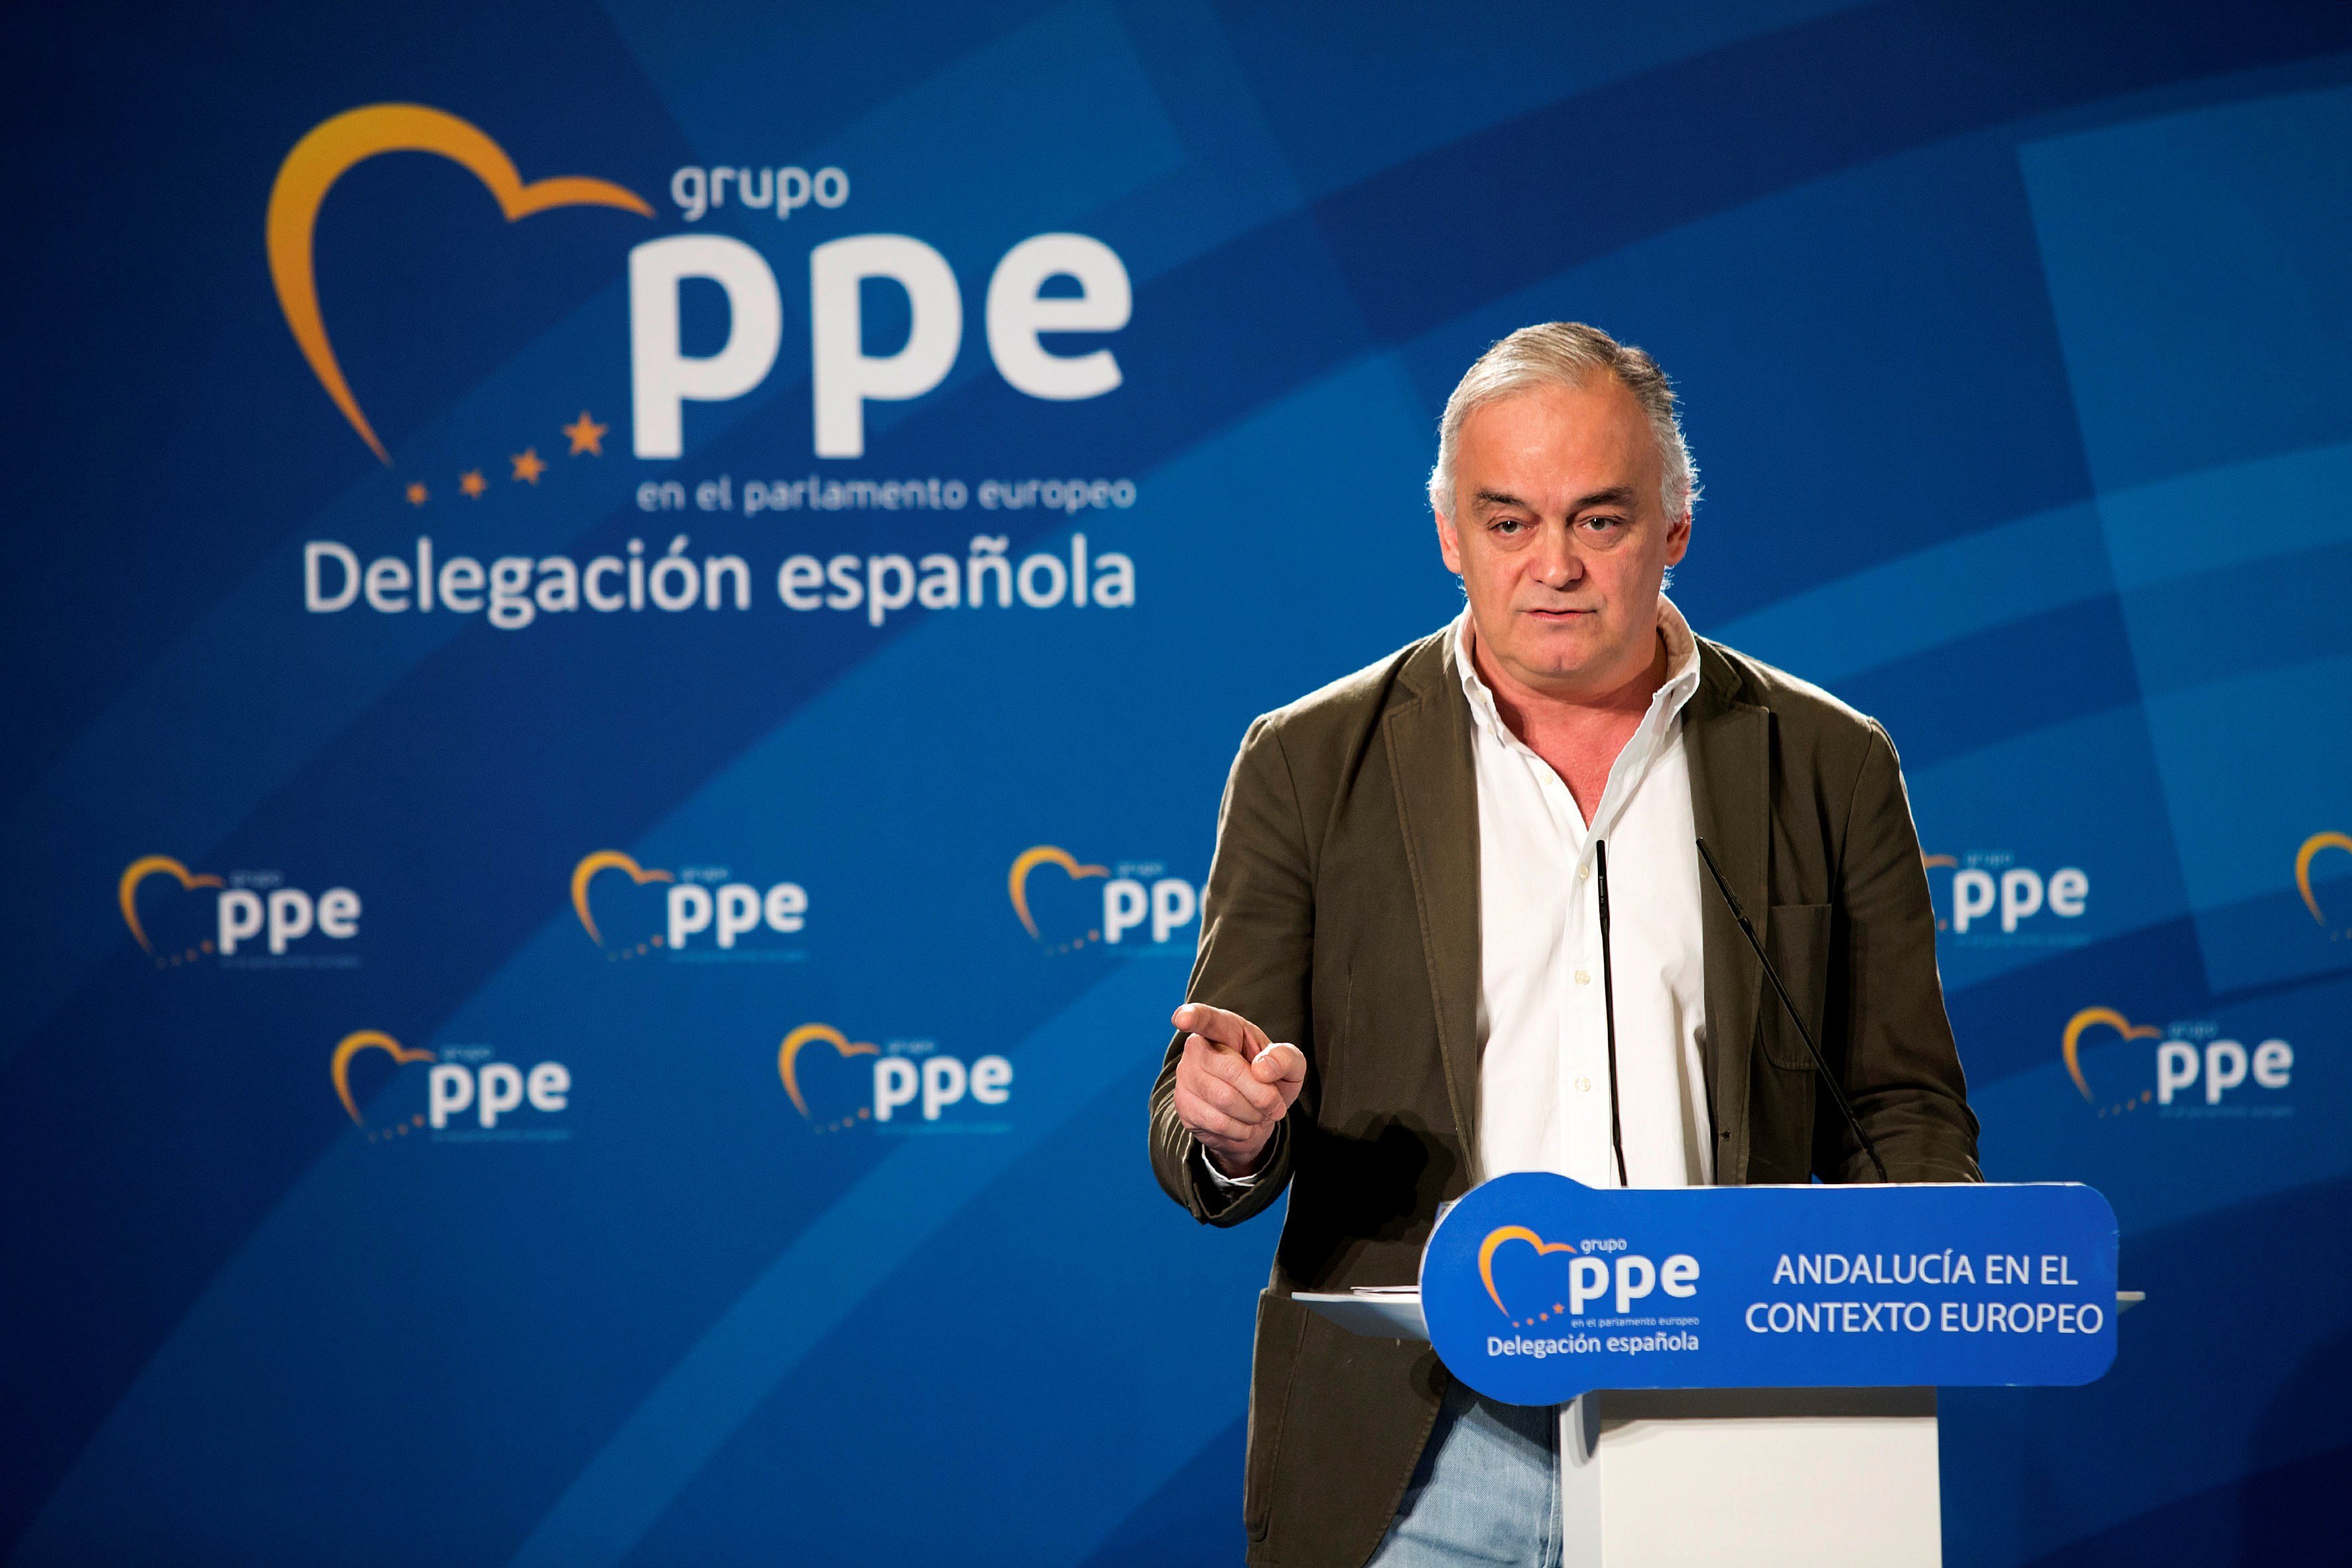 La airada carta de González Pons (PP) a todos los eurodiputados contra Alemania